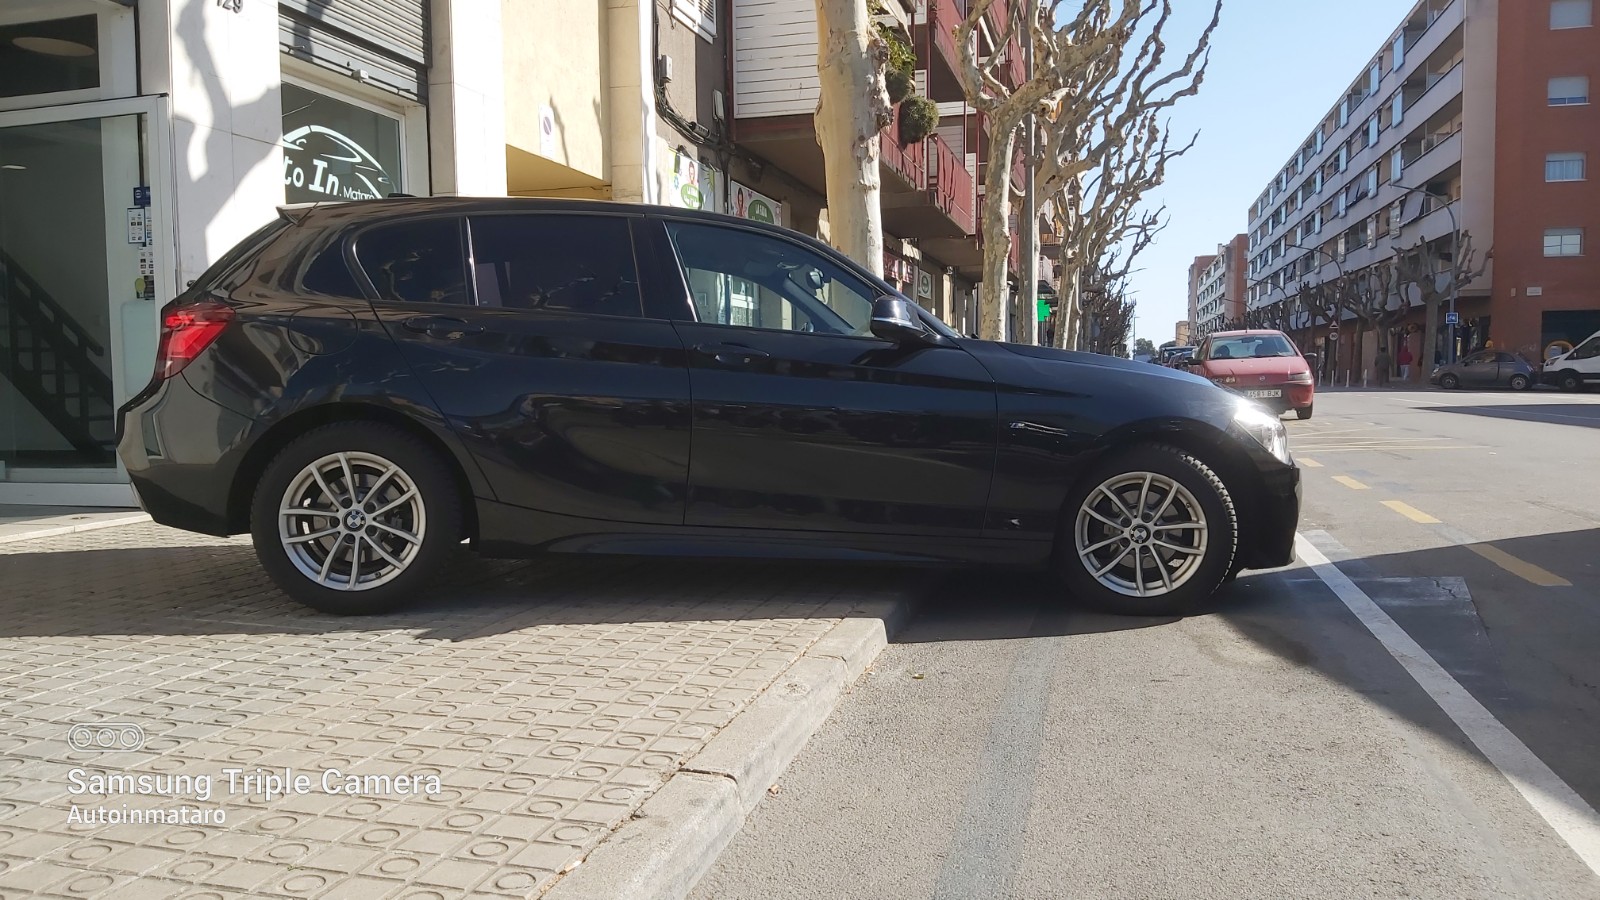 BMW Serie 1 116i